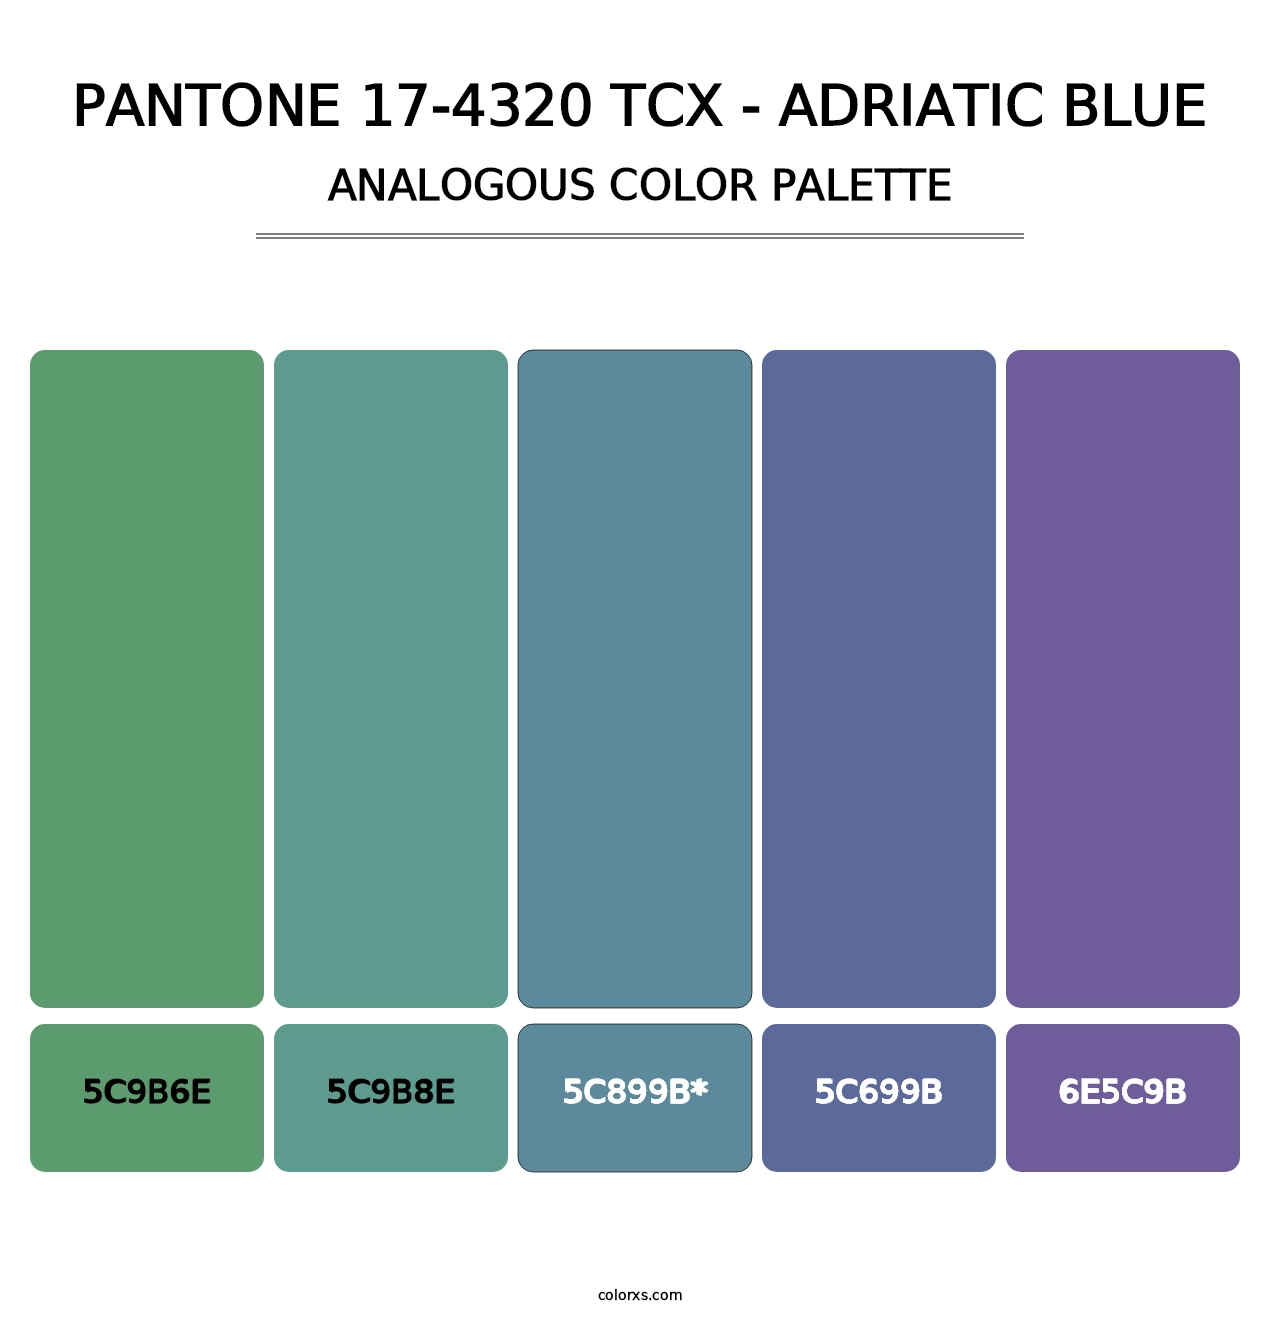 PANTONE 17-4320 TCX - Adriatic Blue - Analogous Color Palette